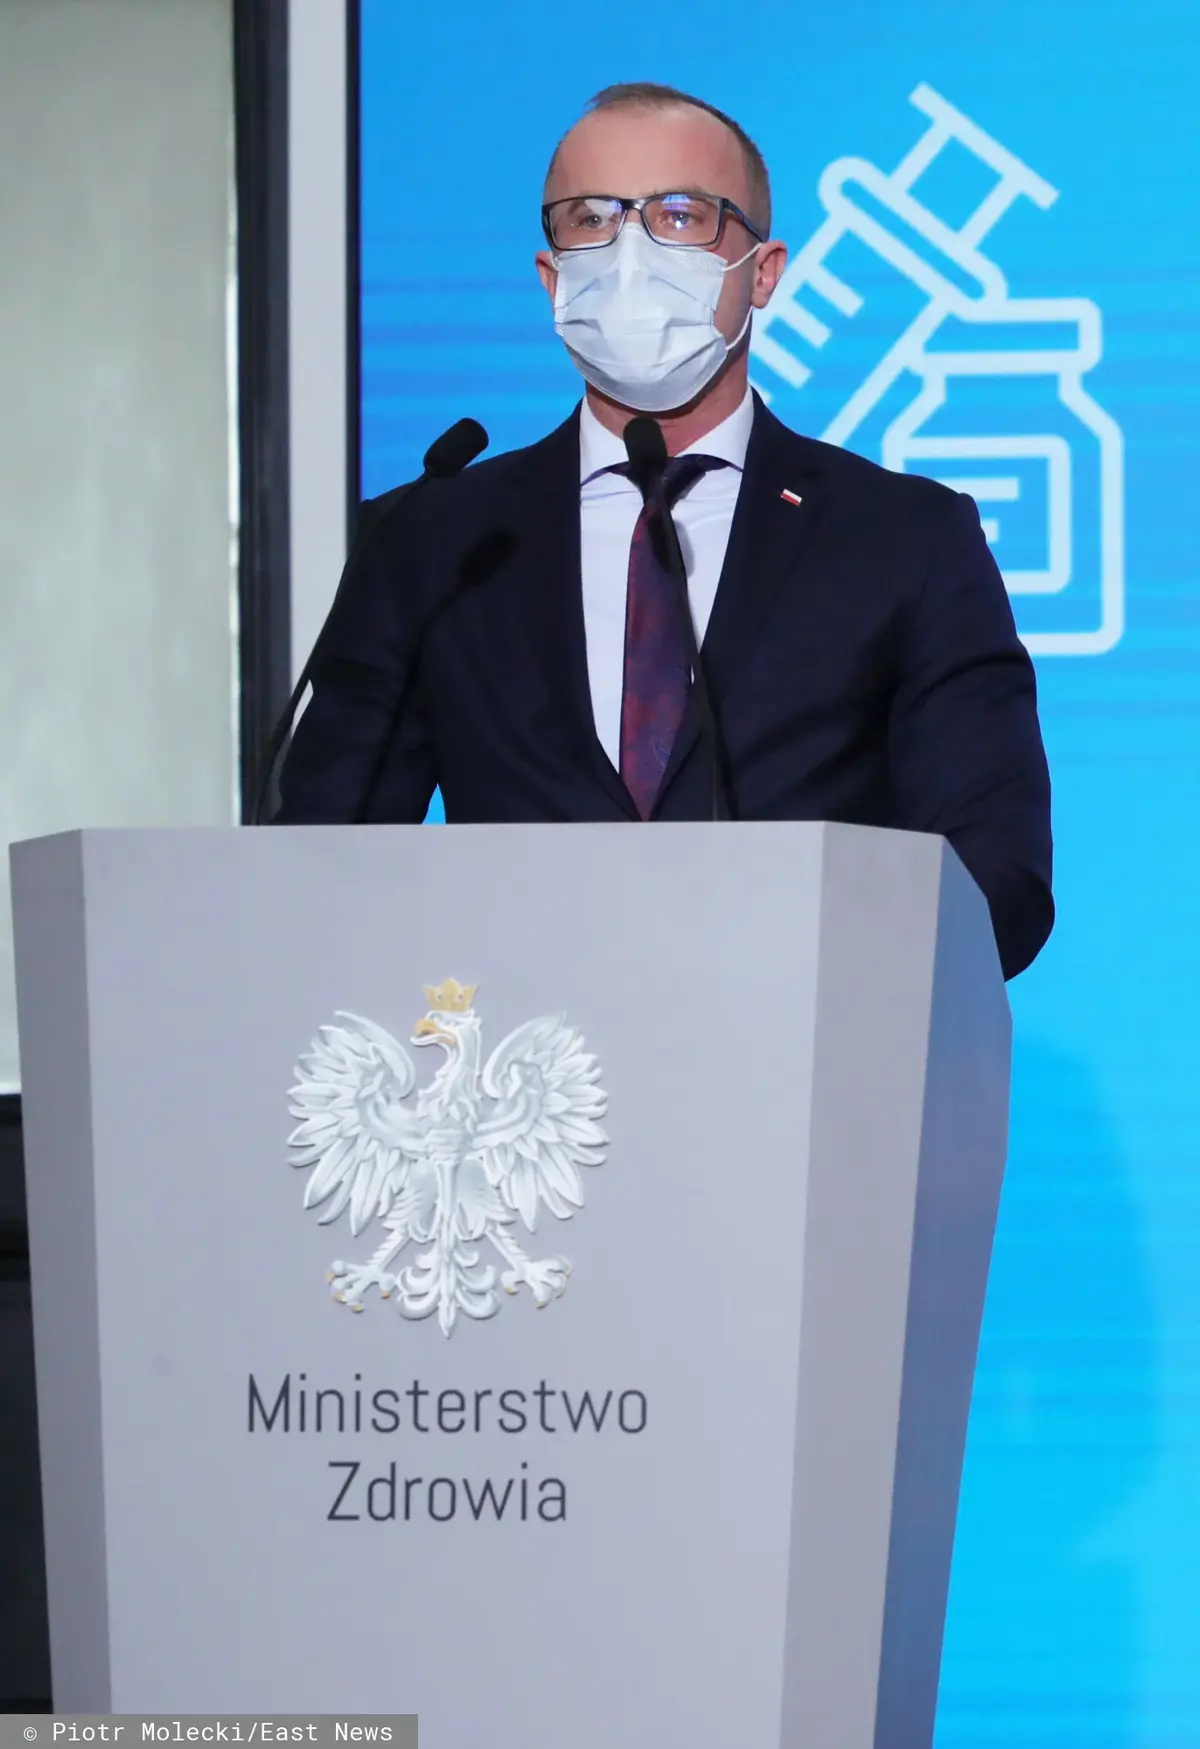 Grzegorz Cessak w garniturze i maseczce za mównicą z napisem Ministerstwo Zdrowia